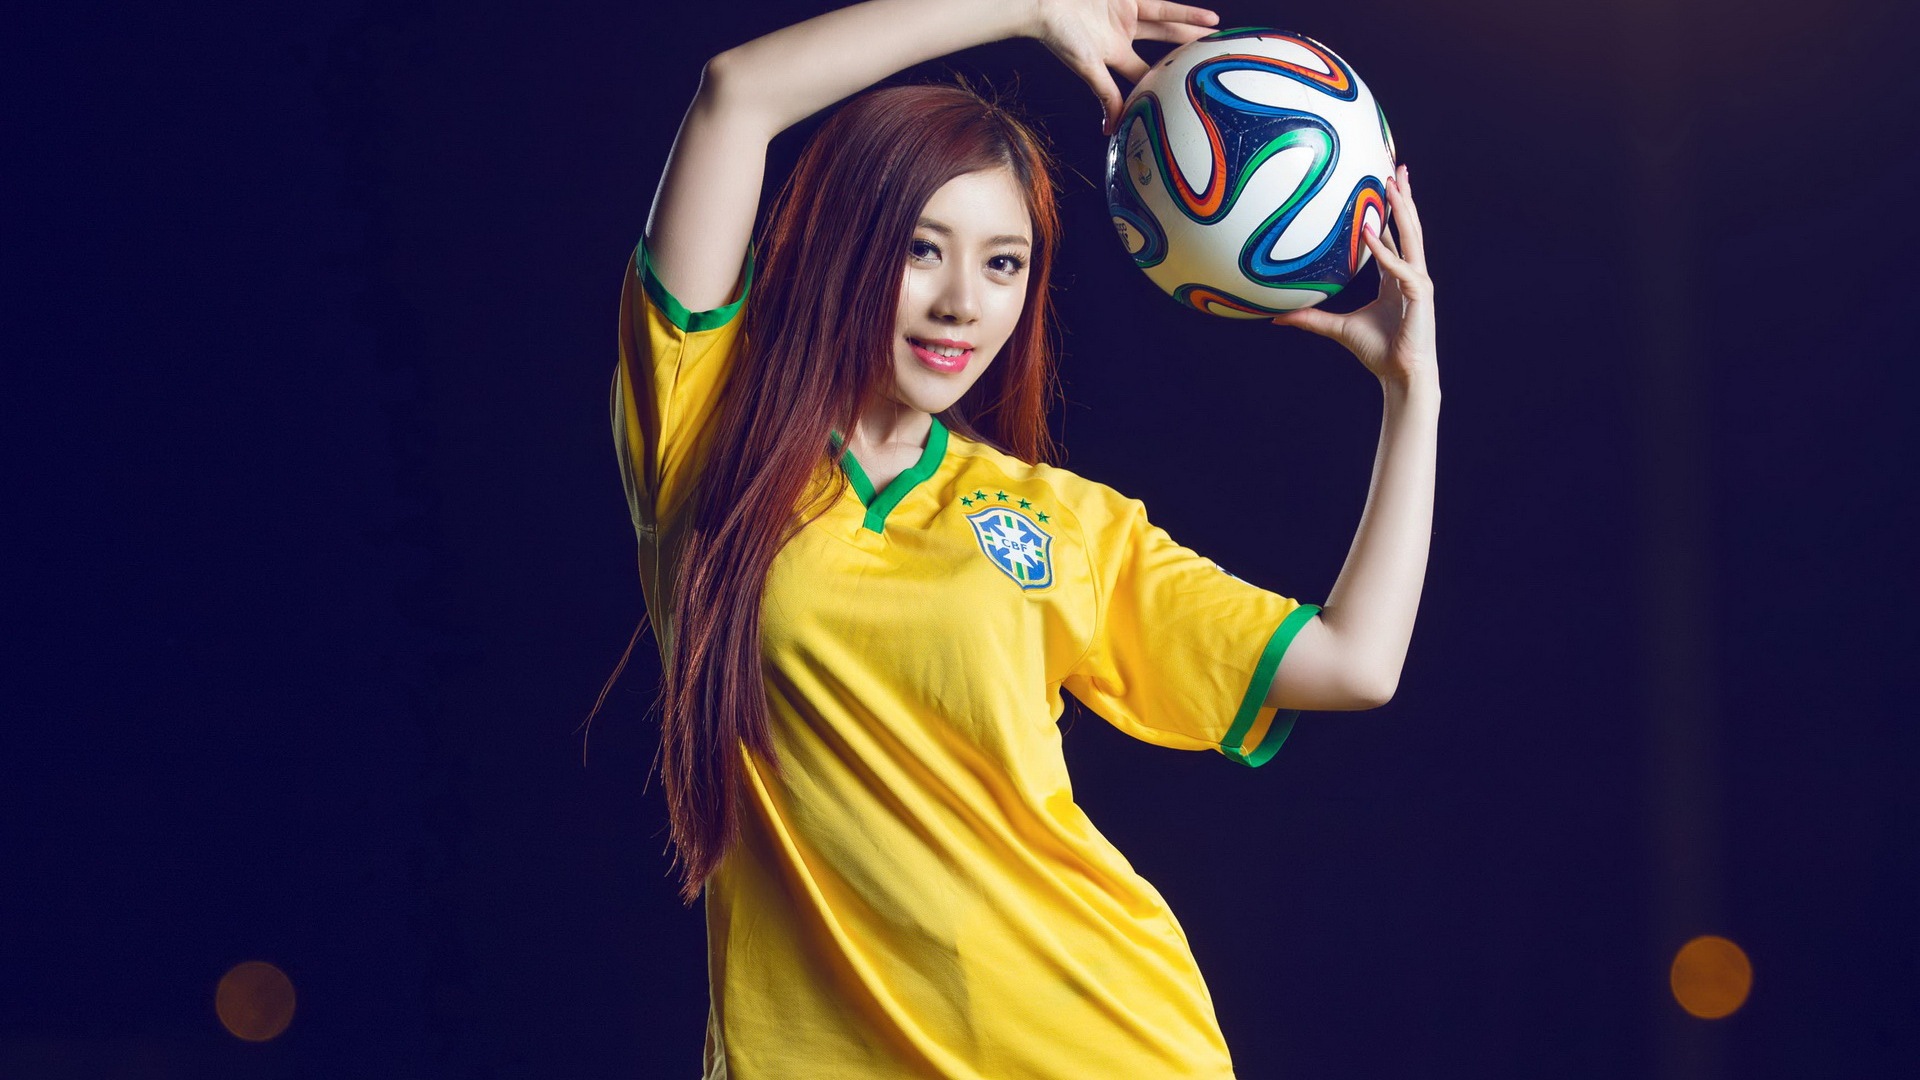 32 camisetas de la Copa del Mundo de fútbol, bebé wallpapers hermosas chicas HD #21 - 1920x1080